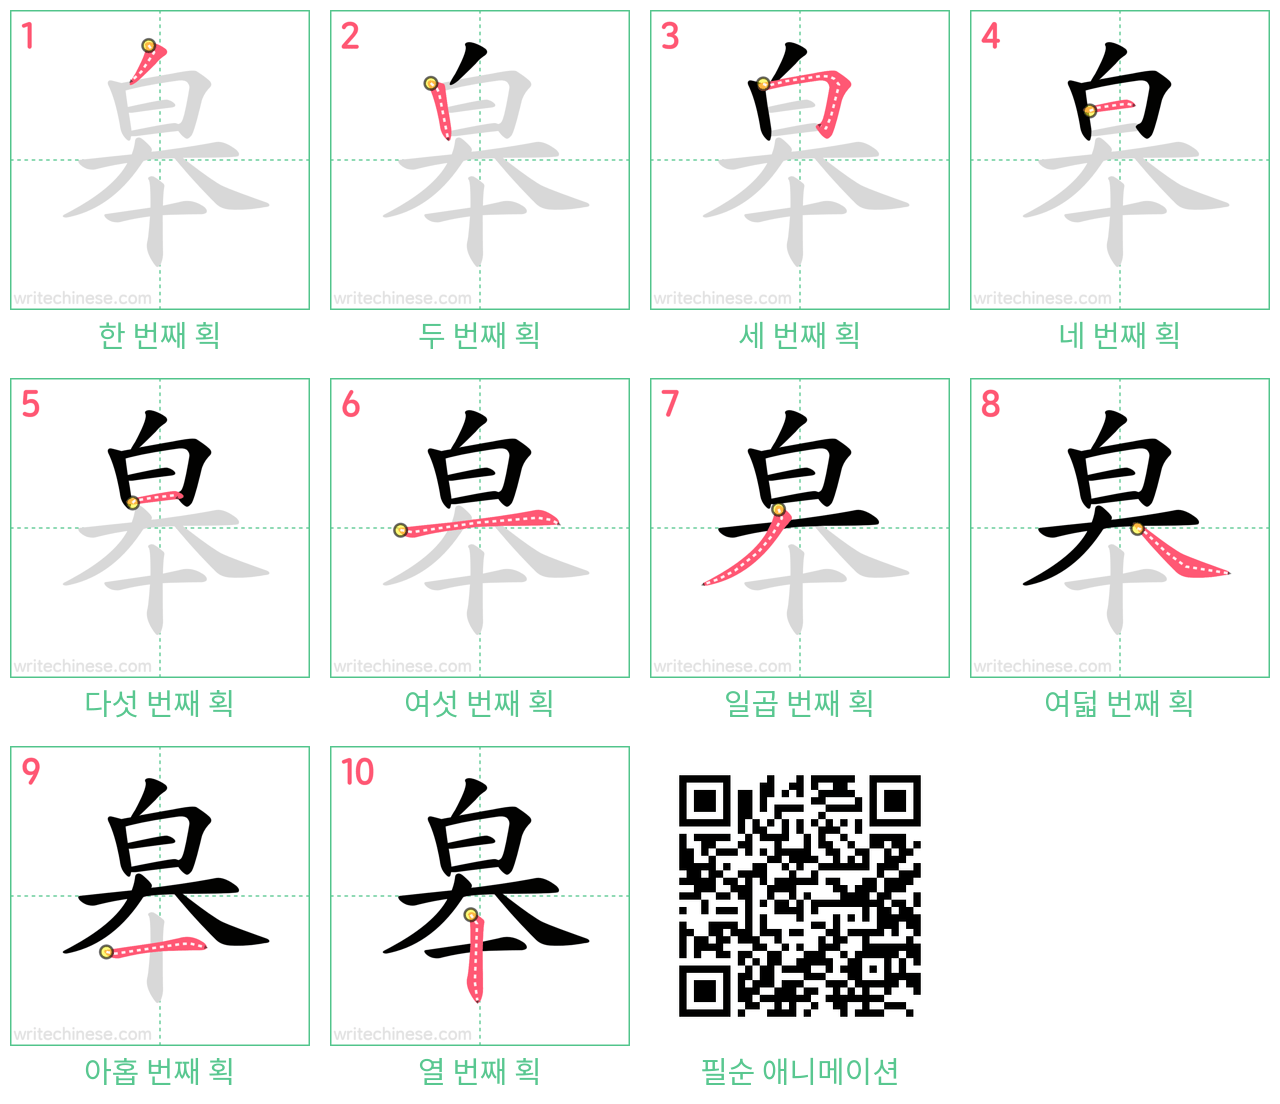 皋 step-by-step stroke order diagrams